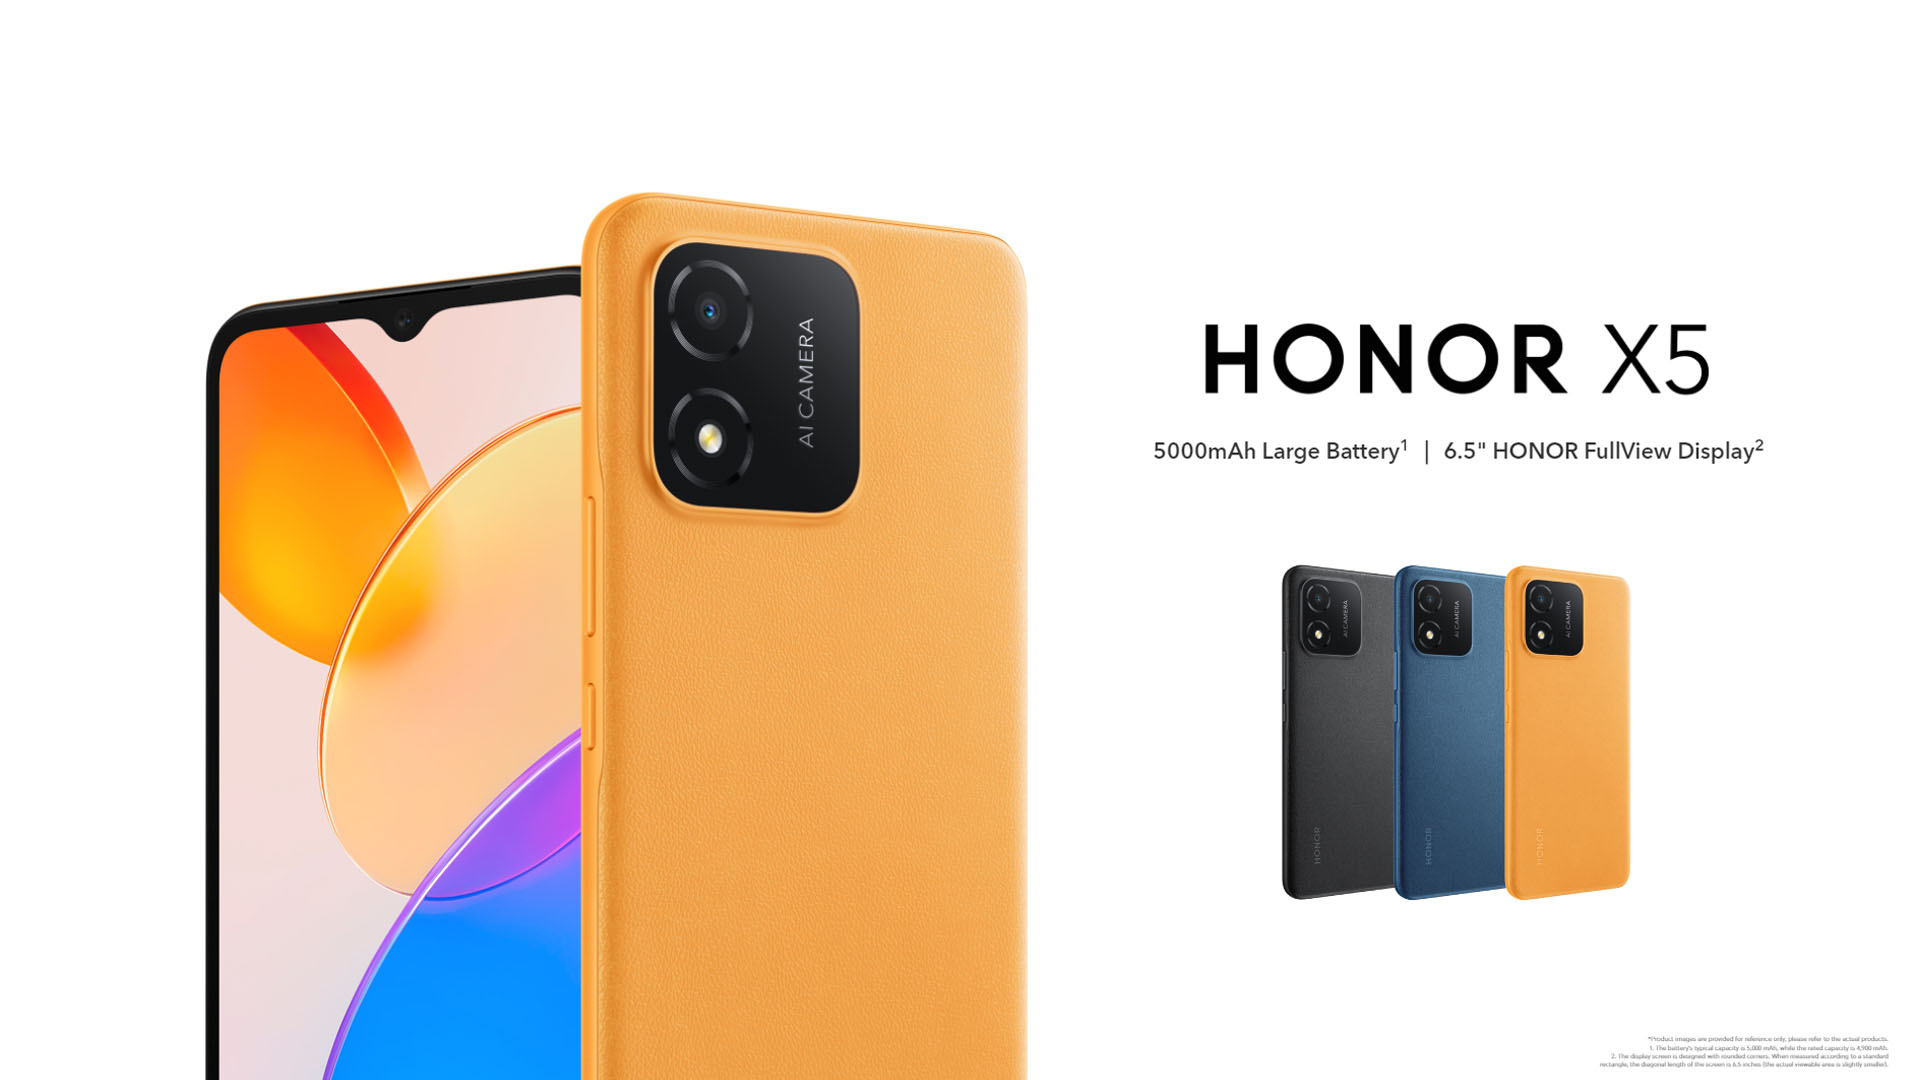 HONOR ไทยเปิดตัว HONOR X5 สมาร์ตโฟนรุ่นประหยัดที่สุดของค่าย ด้วยค่าตัวแค่ 3,299 บาทเท่านั้น !